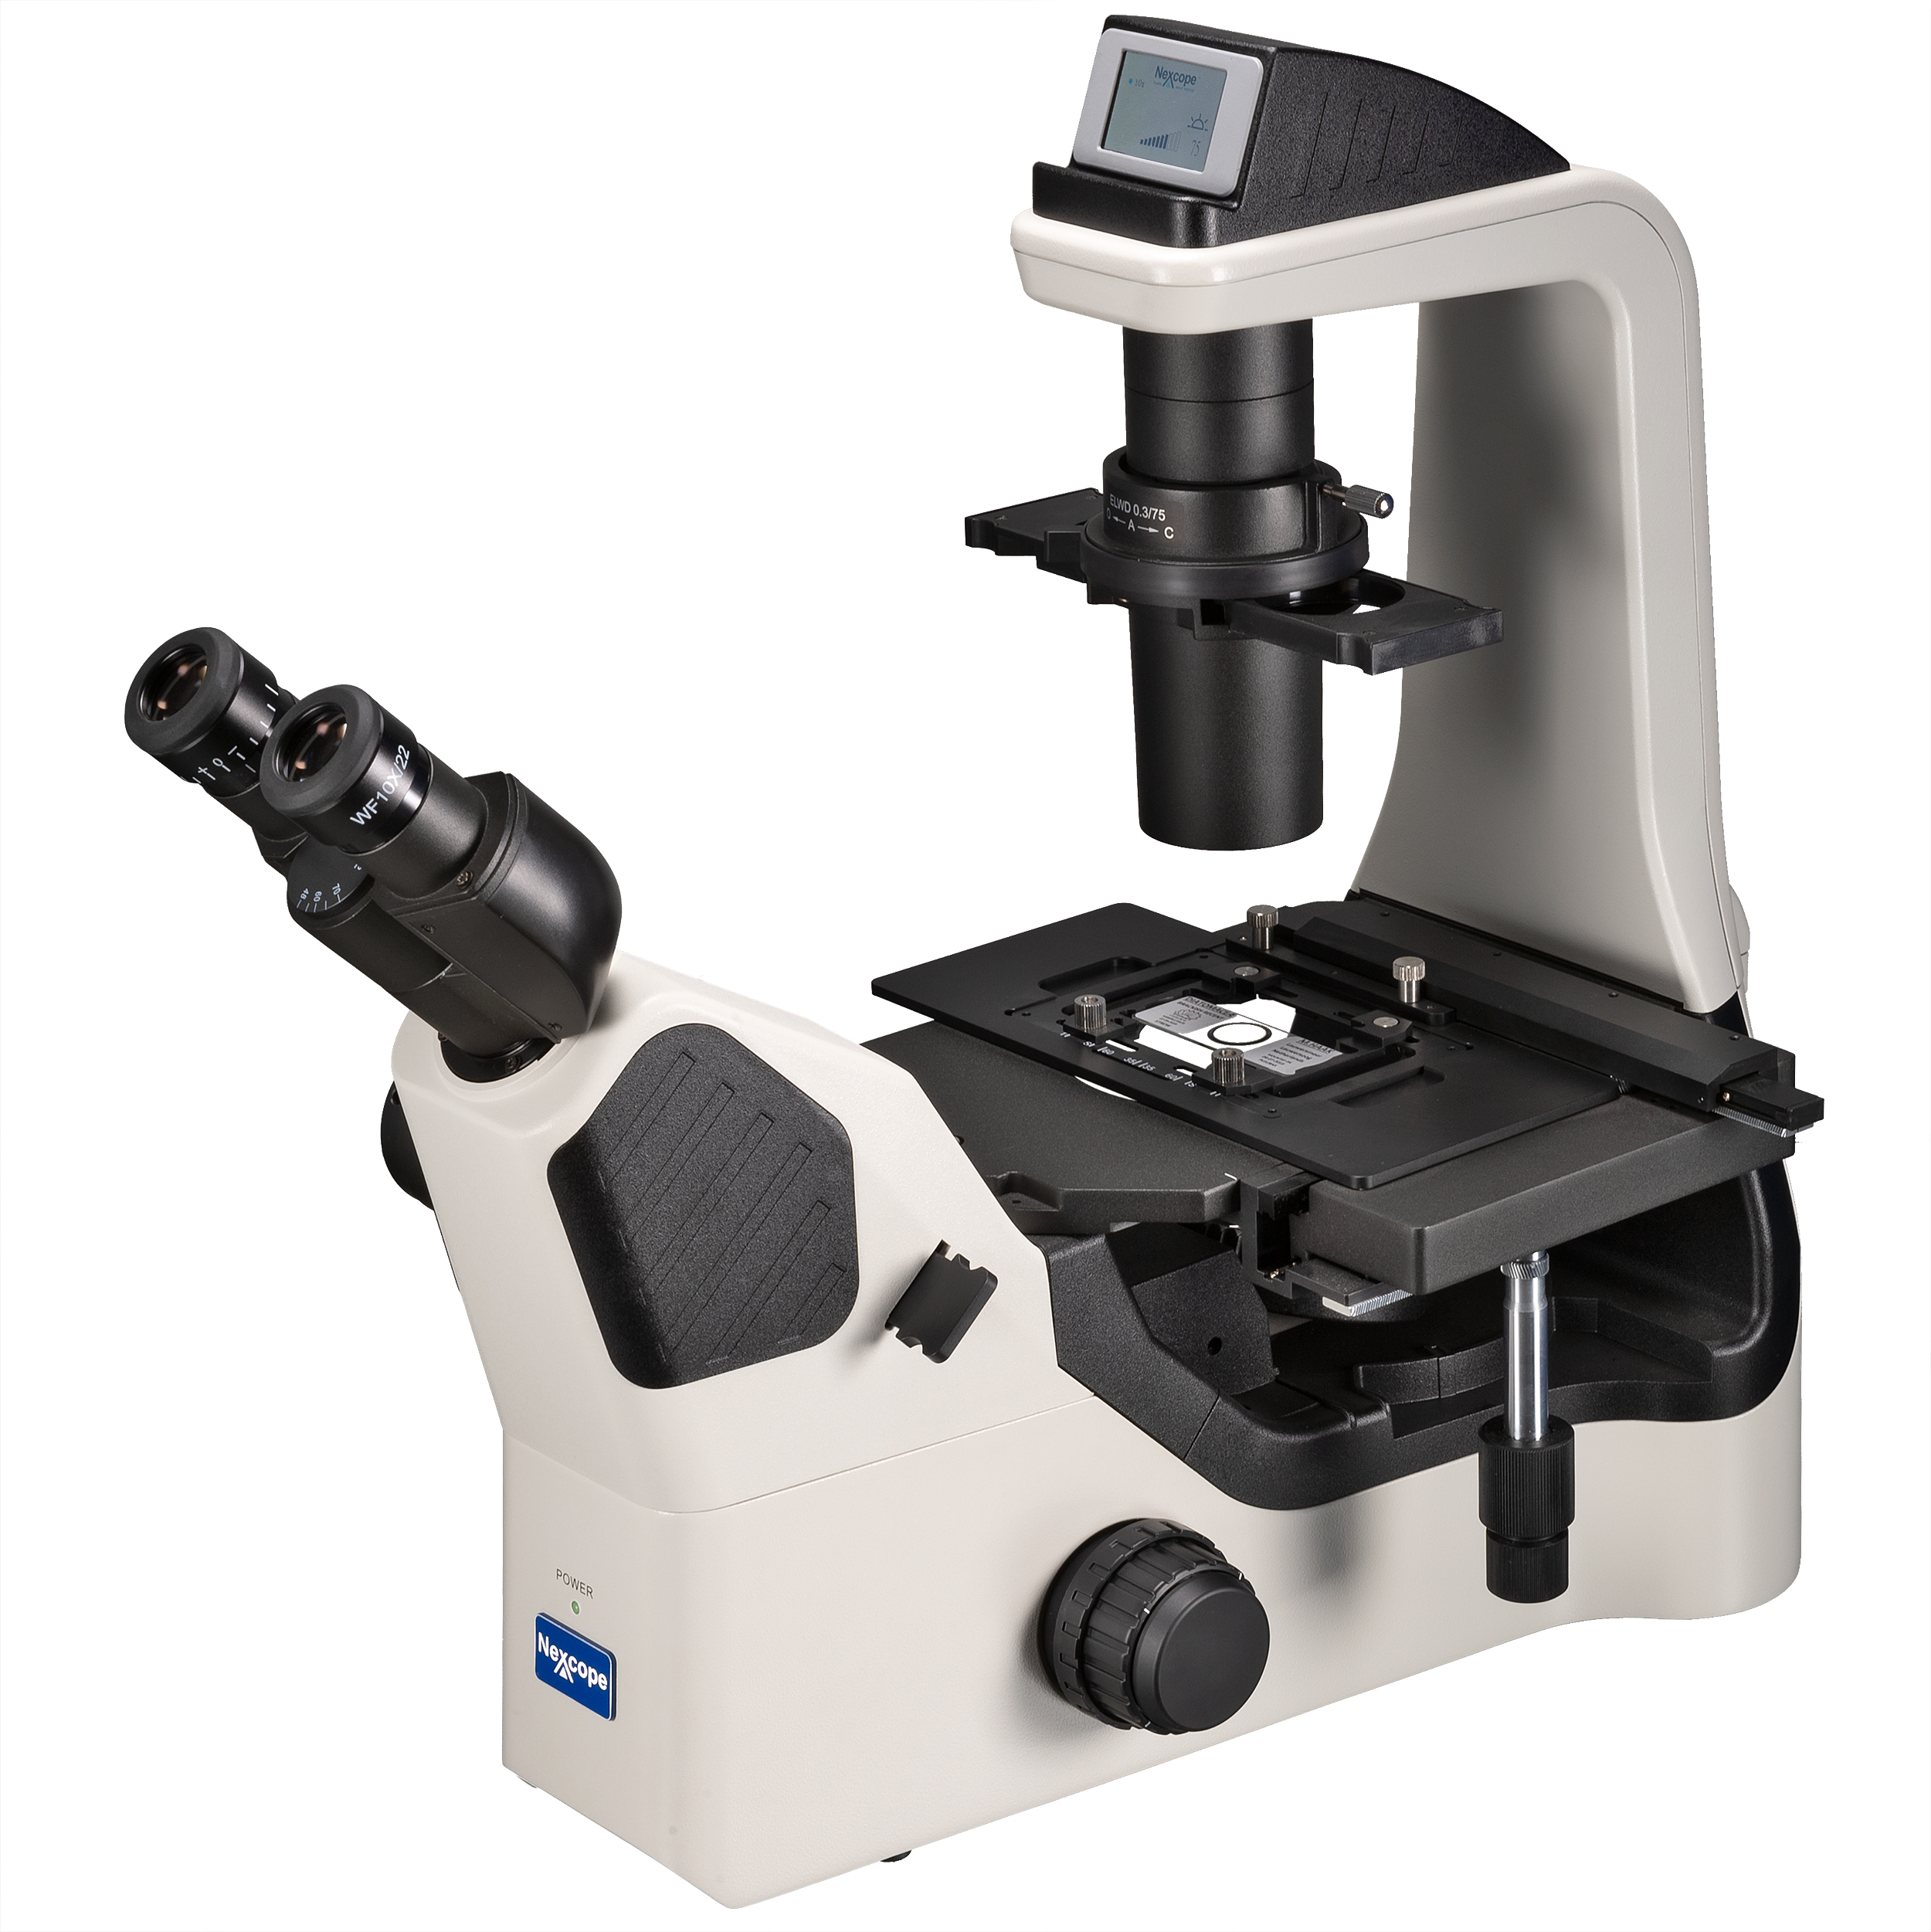 Microscopio Invertito Professionale da Laboratorio Nexcope NIB620 a Contrasto di Fase